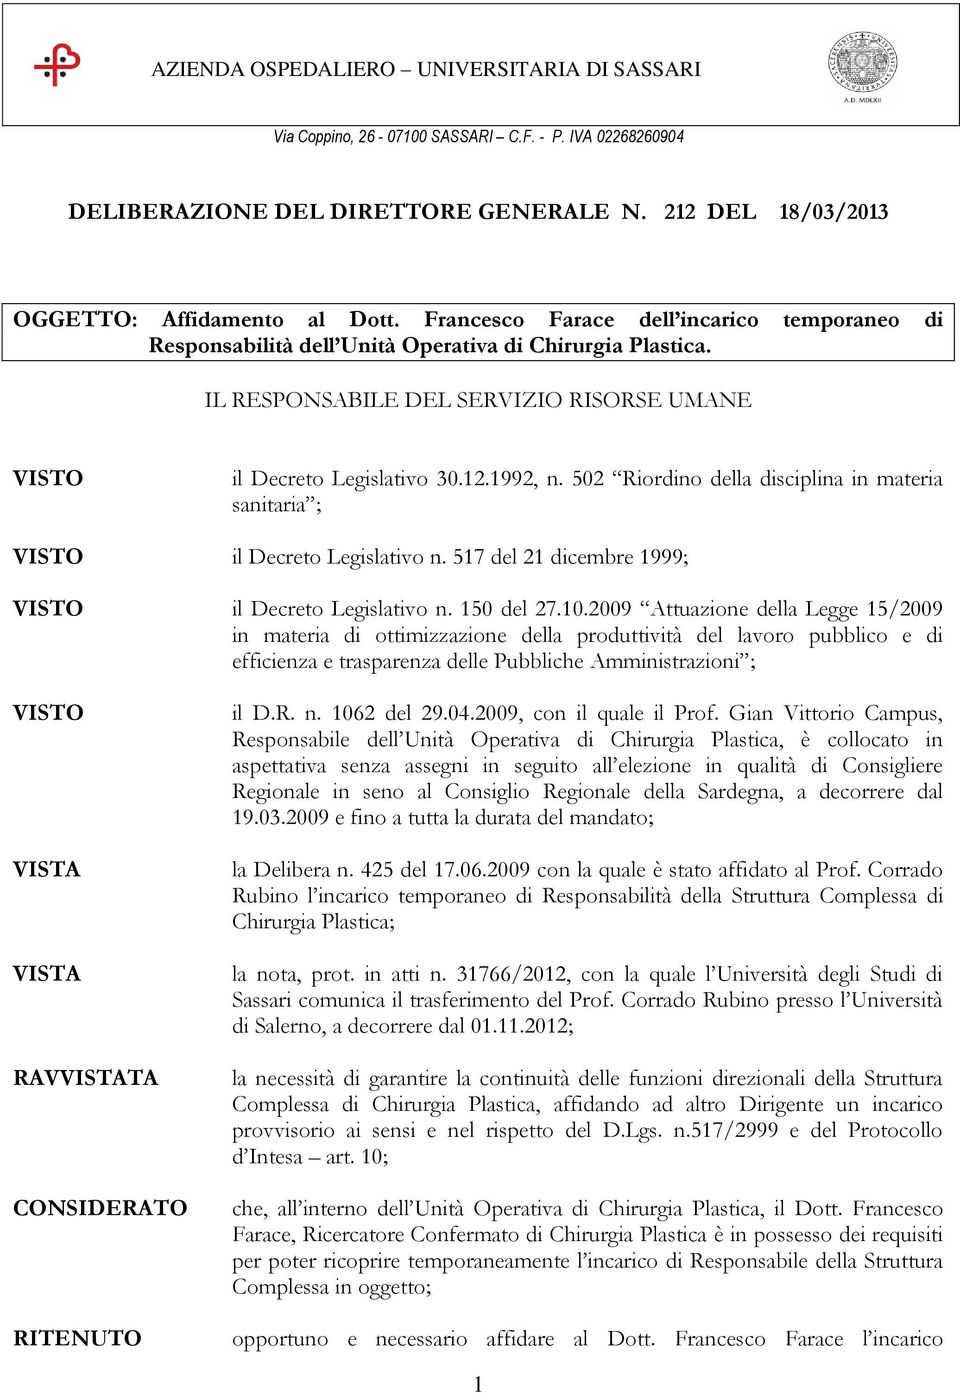 502 Riordino della disciplina in materia sanitaria ; il Decreto Legislativo n. 517 del 21 dicembre 1999; il Decreto Legislativo n. 150 del 27.10.